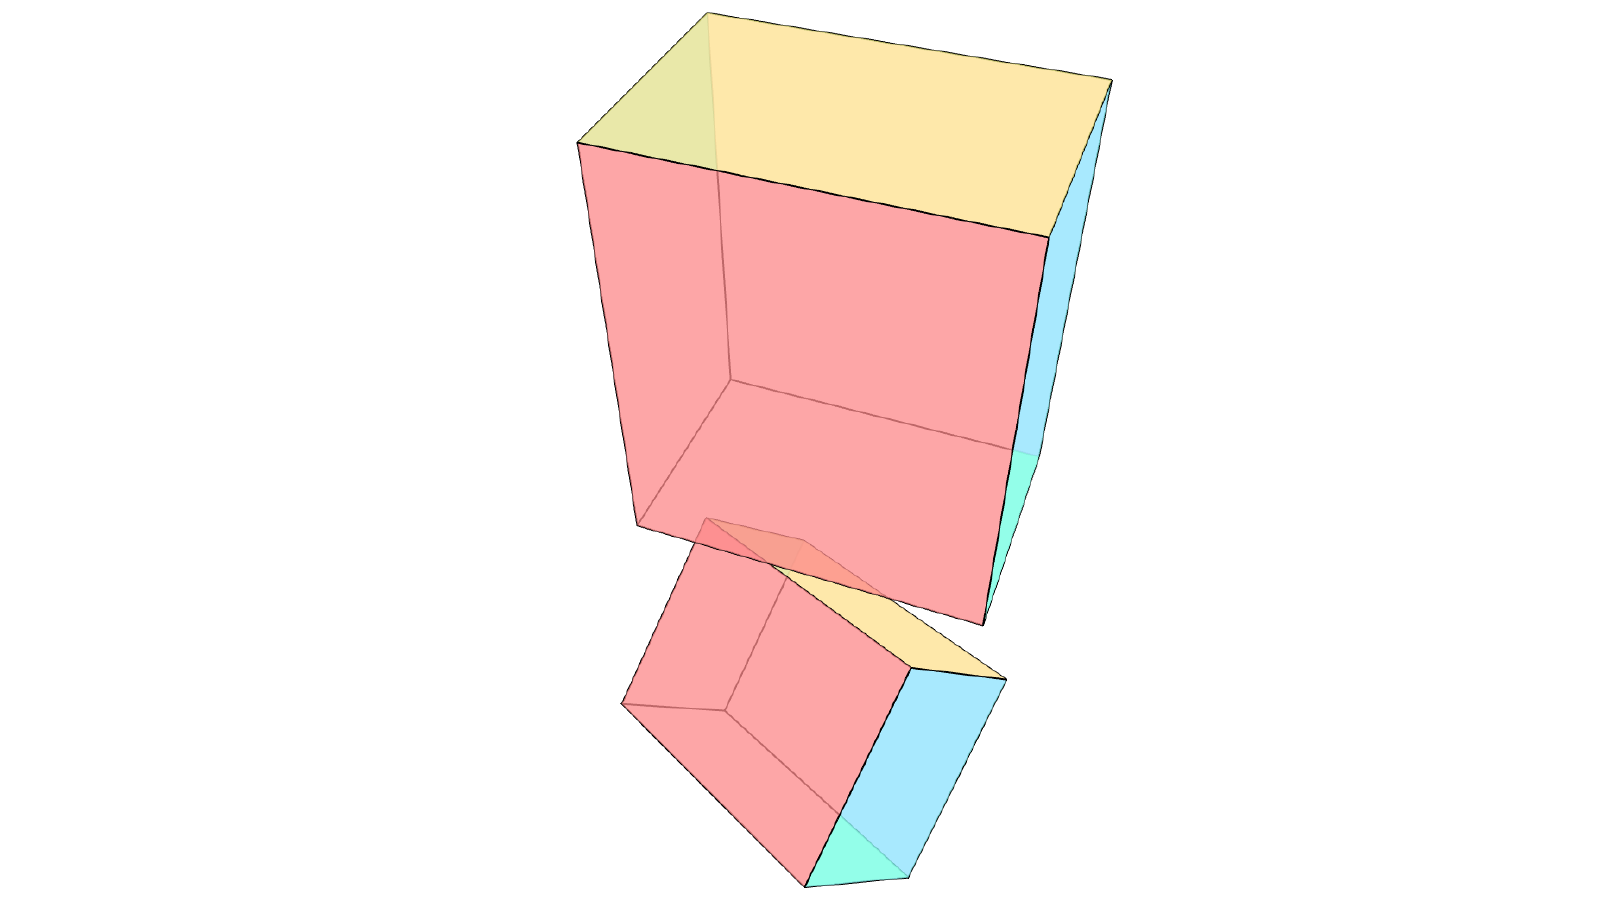 3d model of a cube